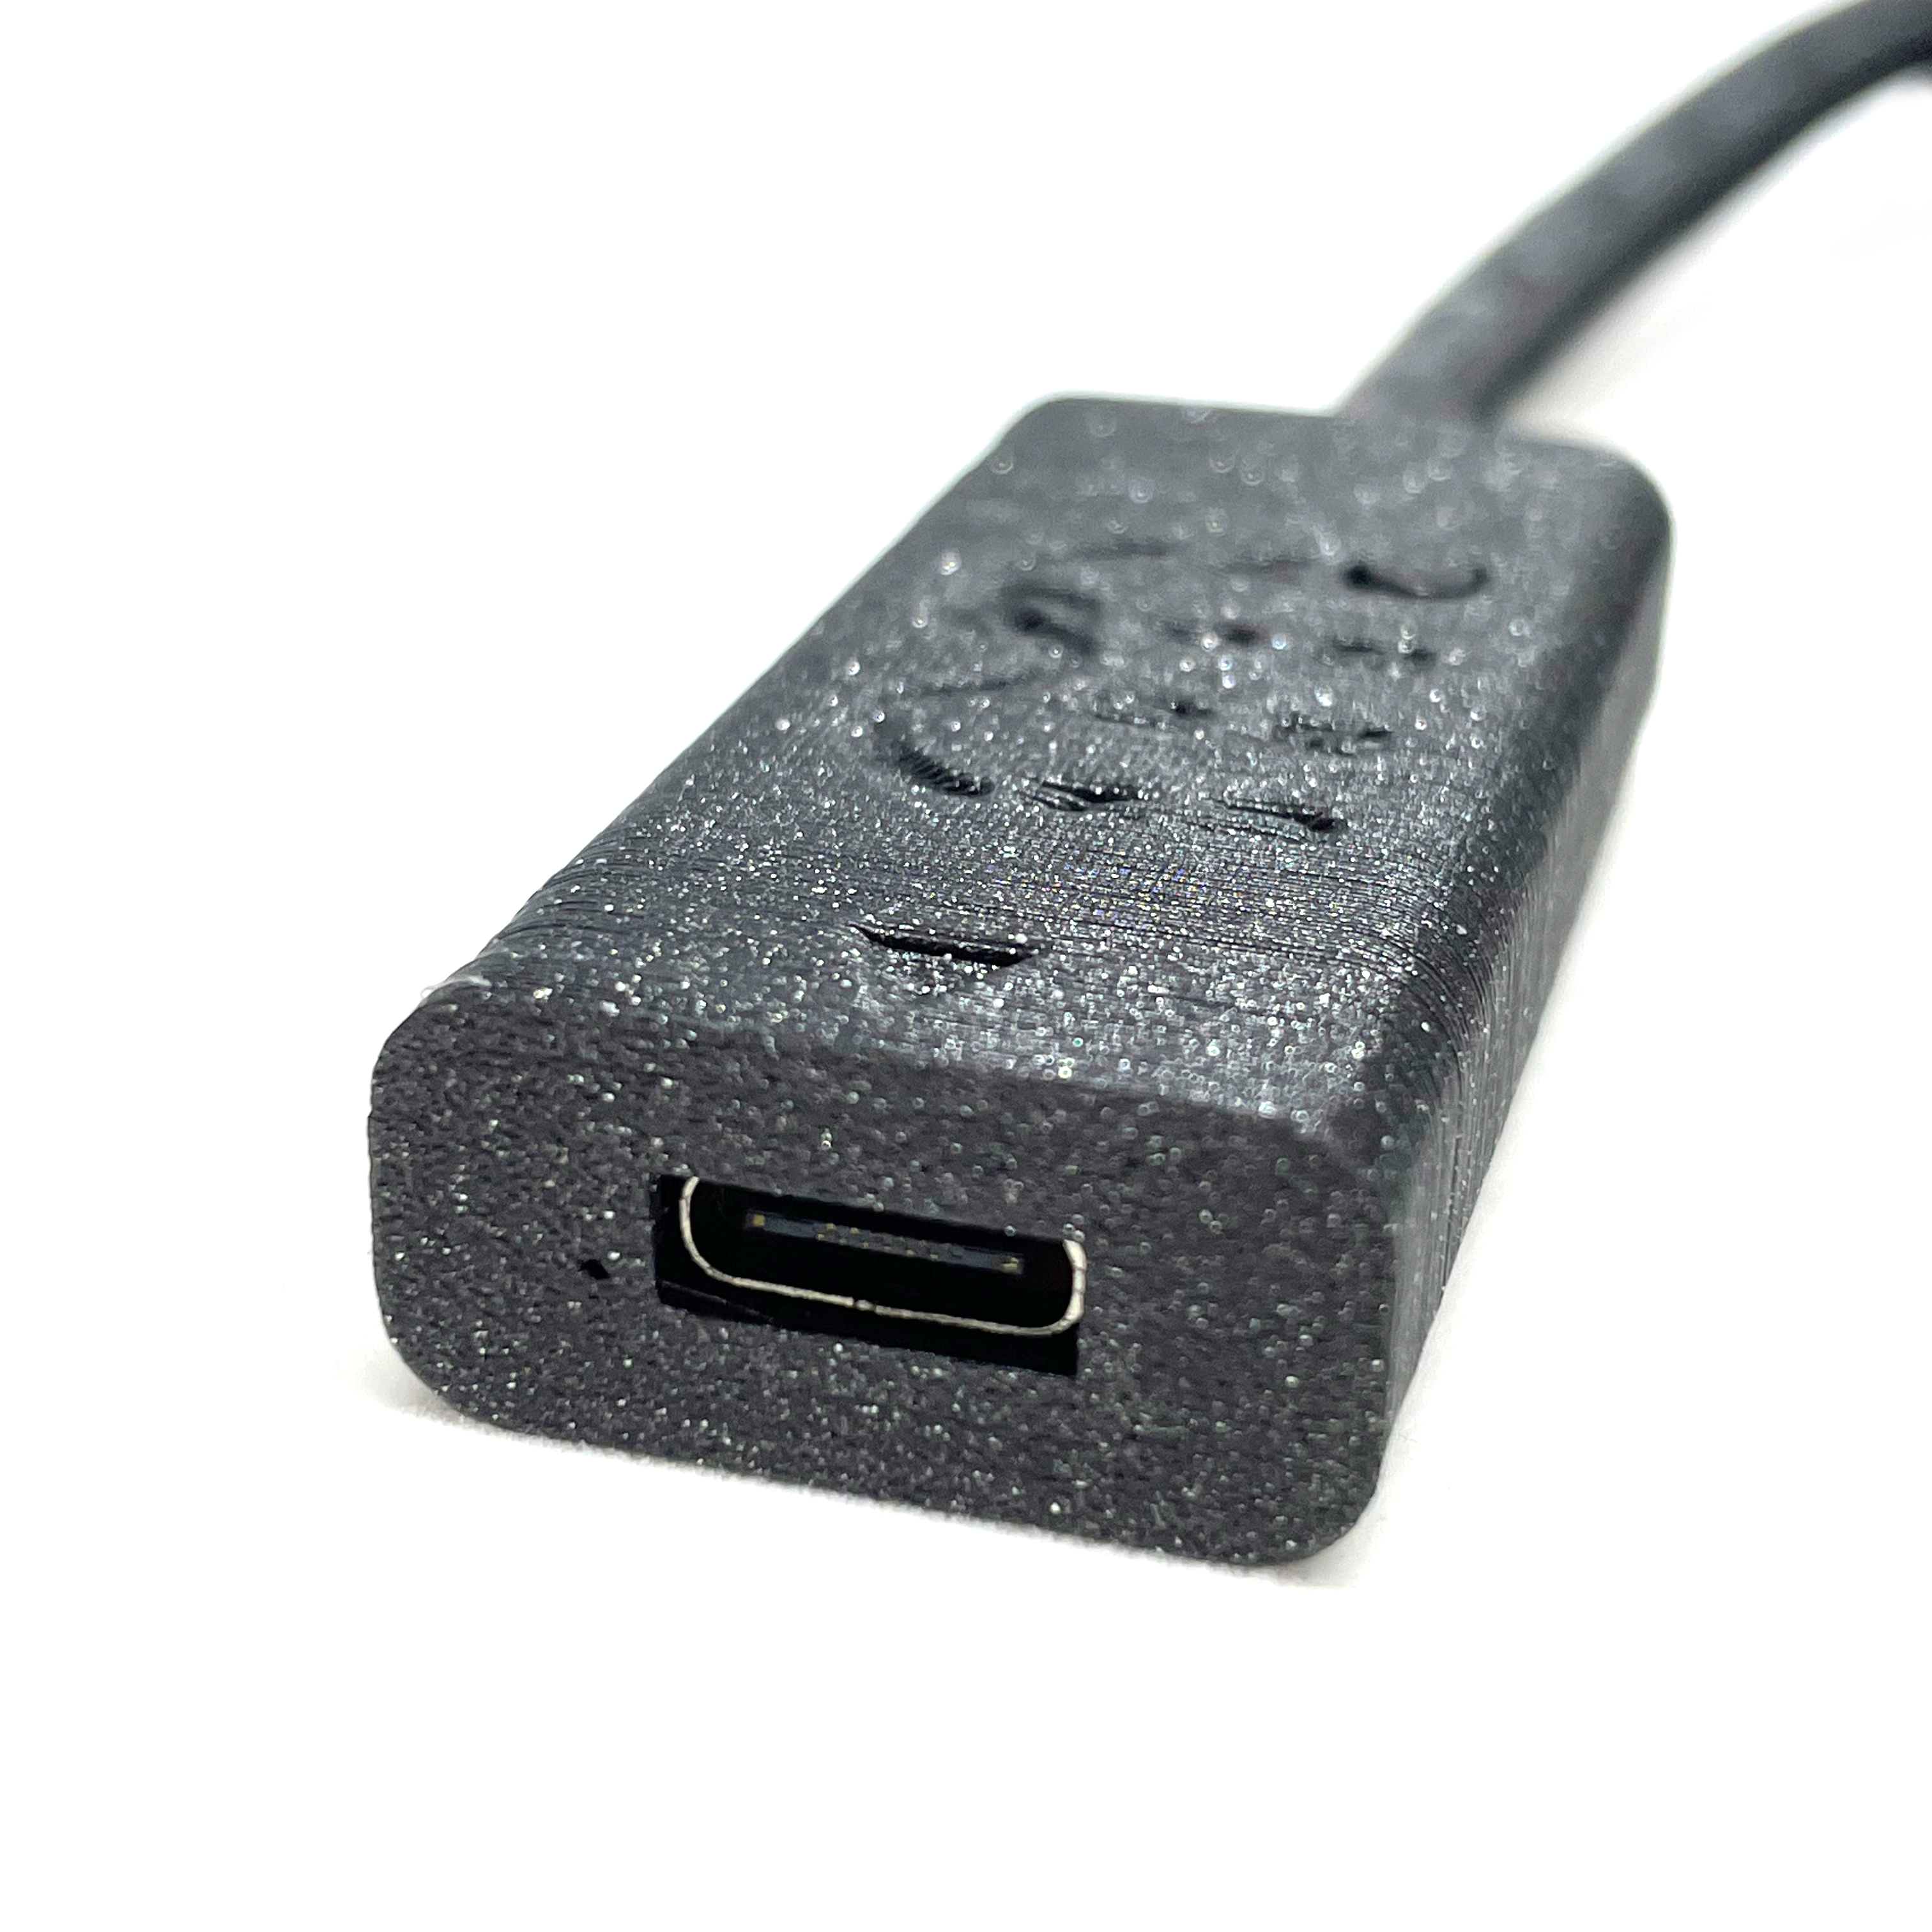 NUON USB